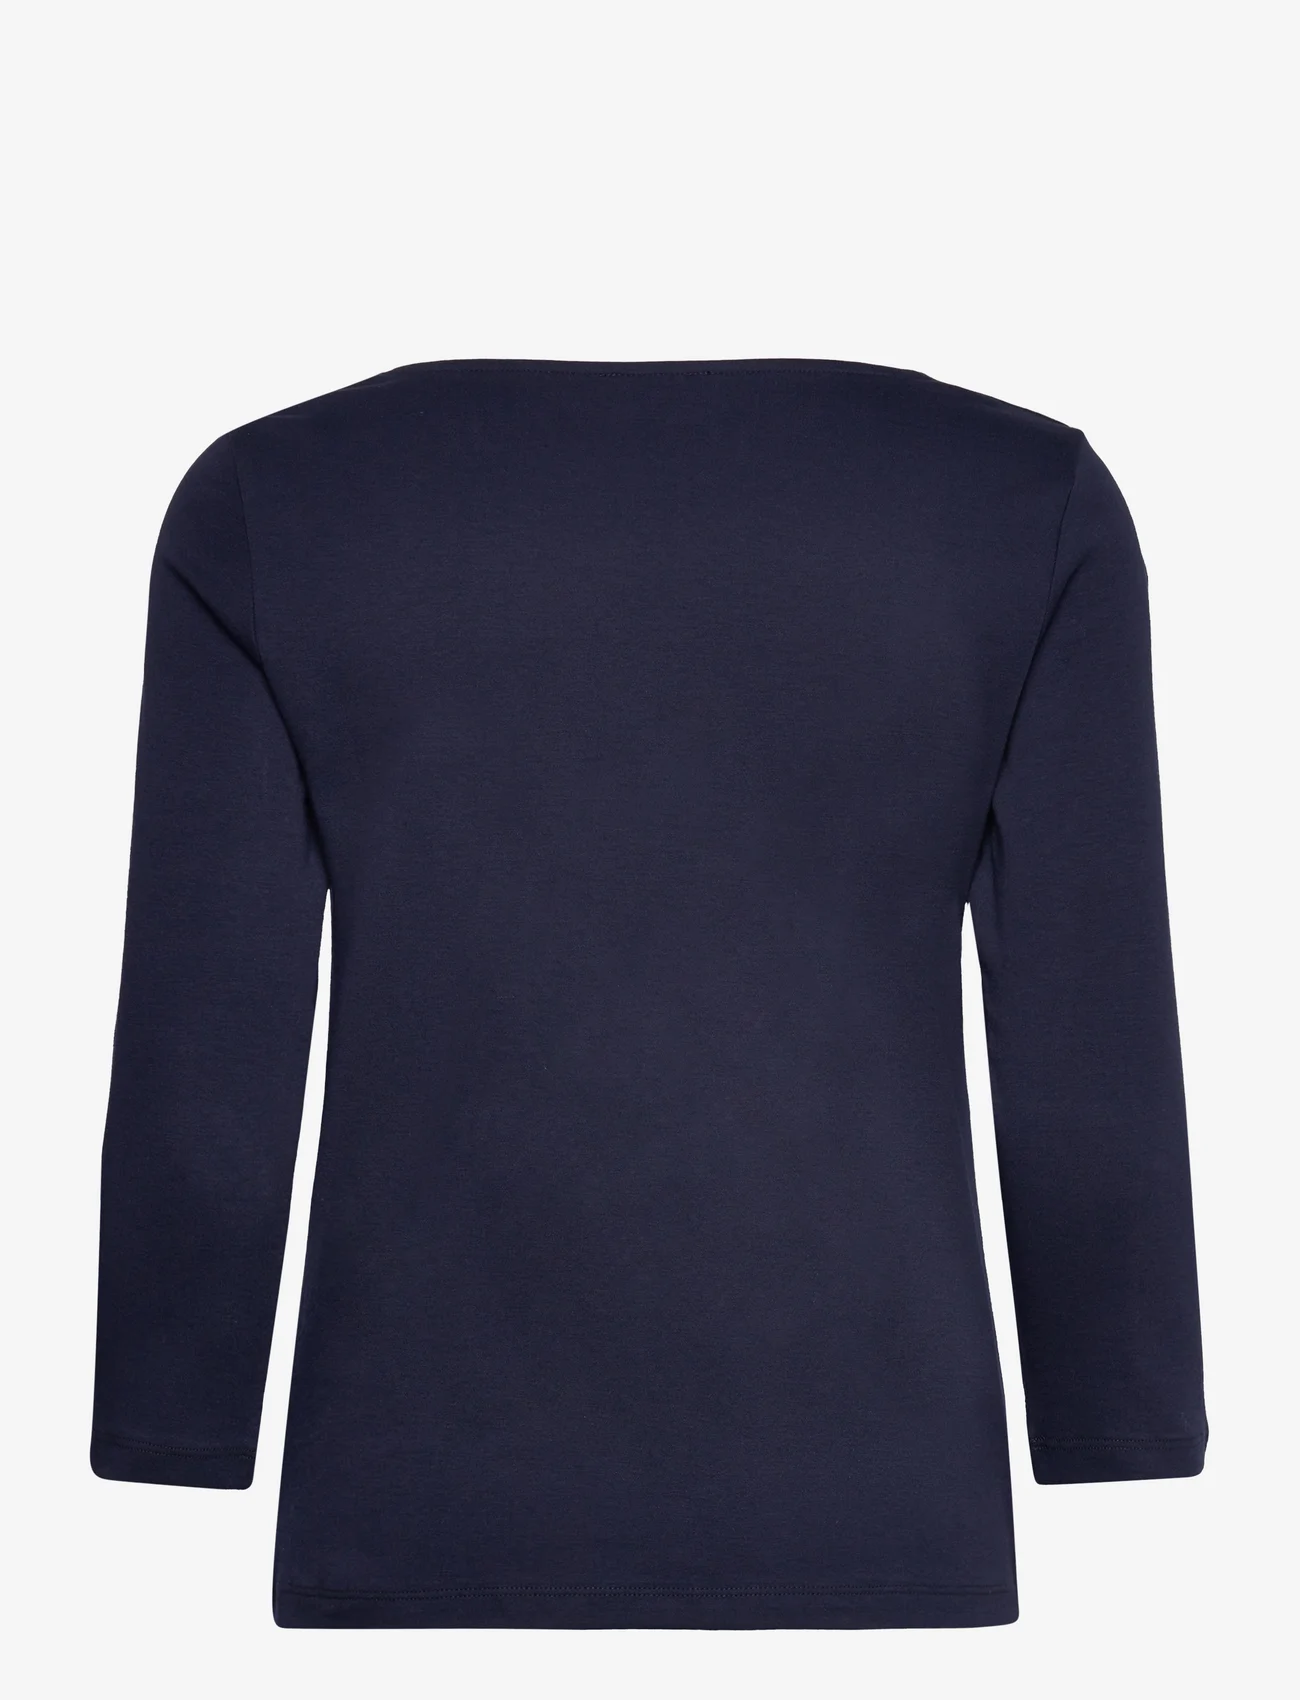 Tom Tailor - T-shirt carré neck - lowest prices - sky captain blue - 1